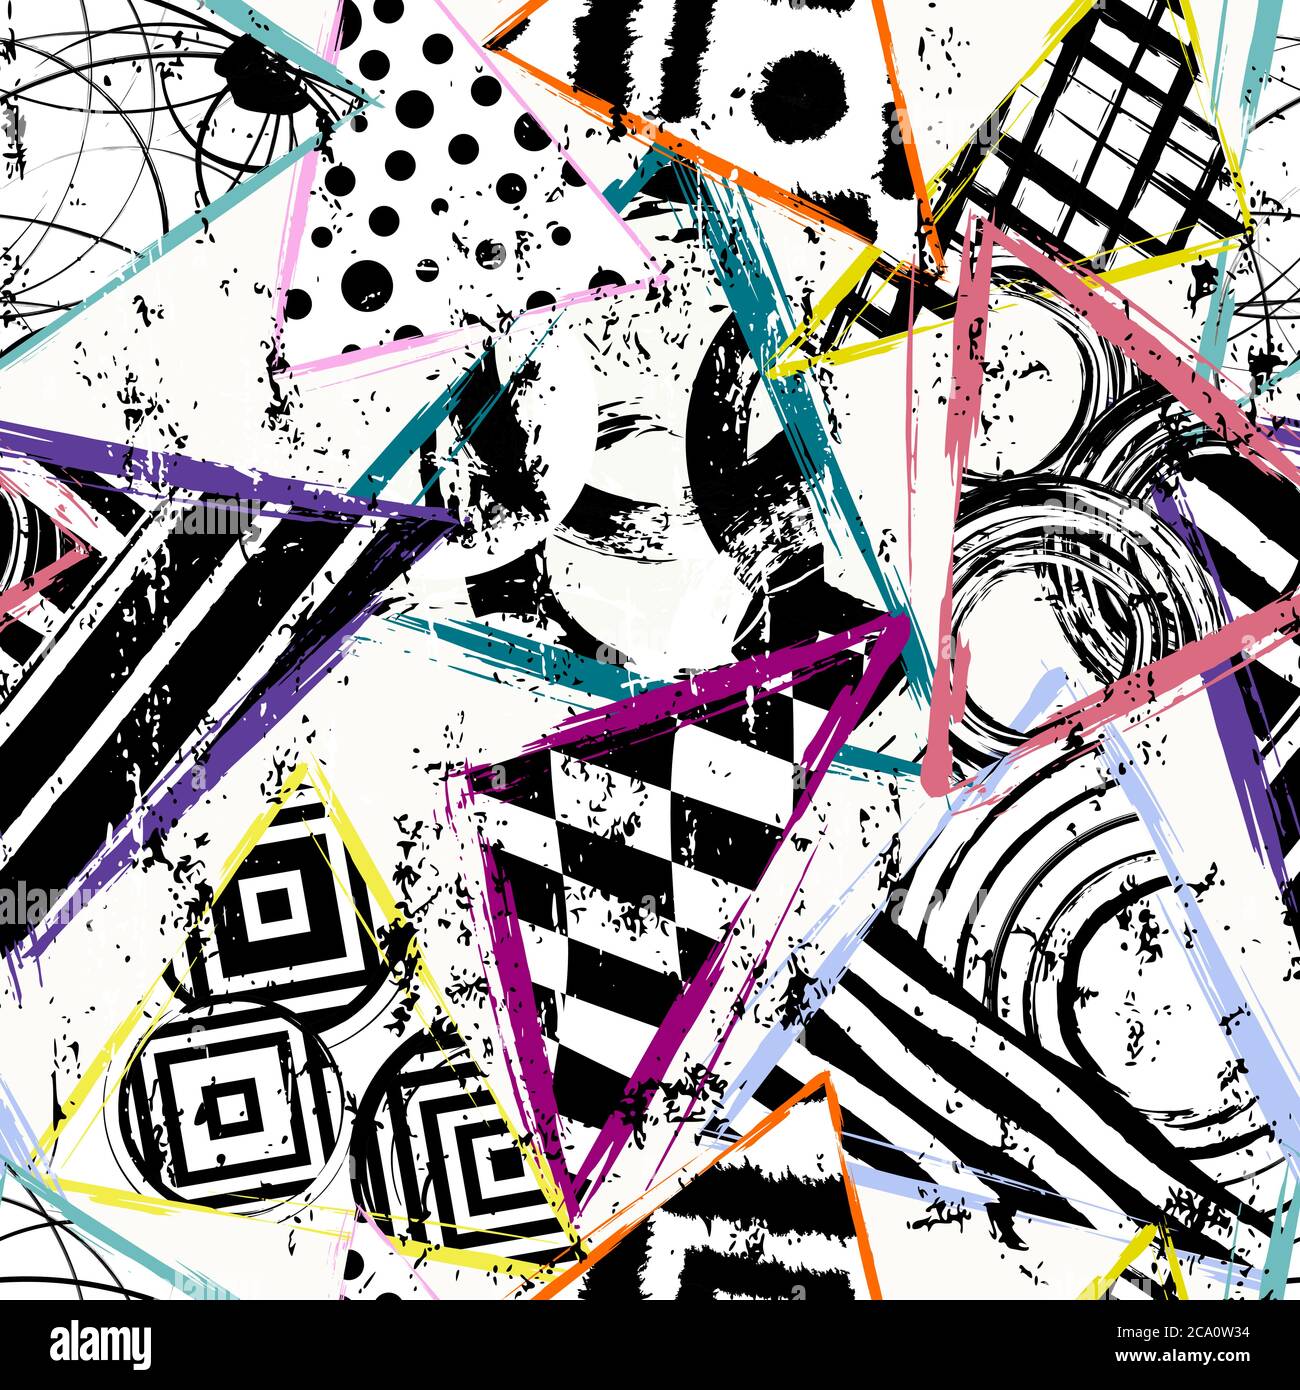 motif d'arrière-plan sans couture, avec triangles, cercles, traits de peinture et éclaboussures, noir et blanc Illustration de Vecteur